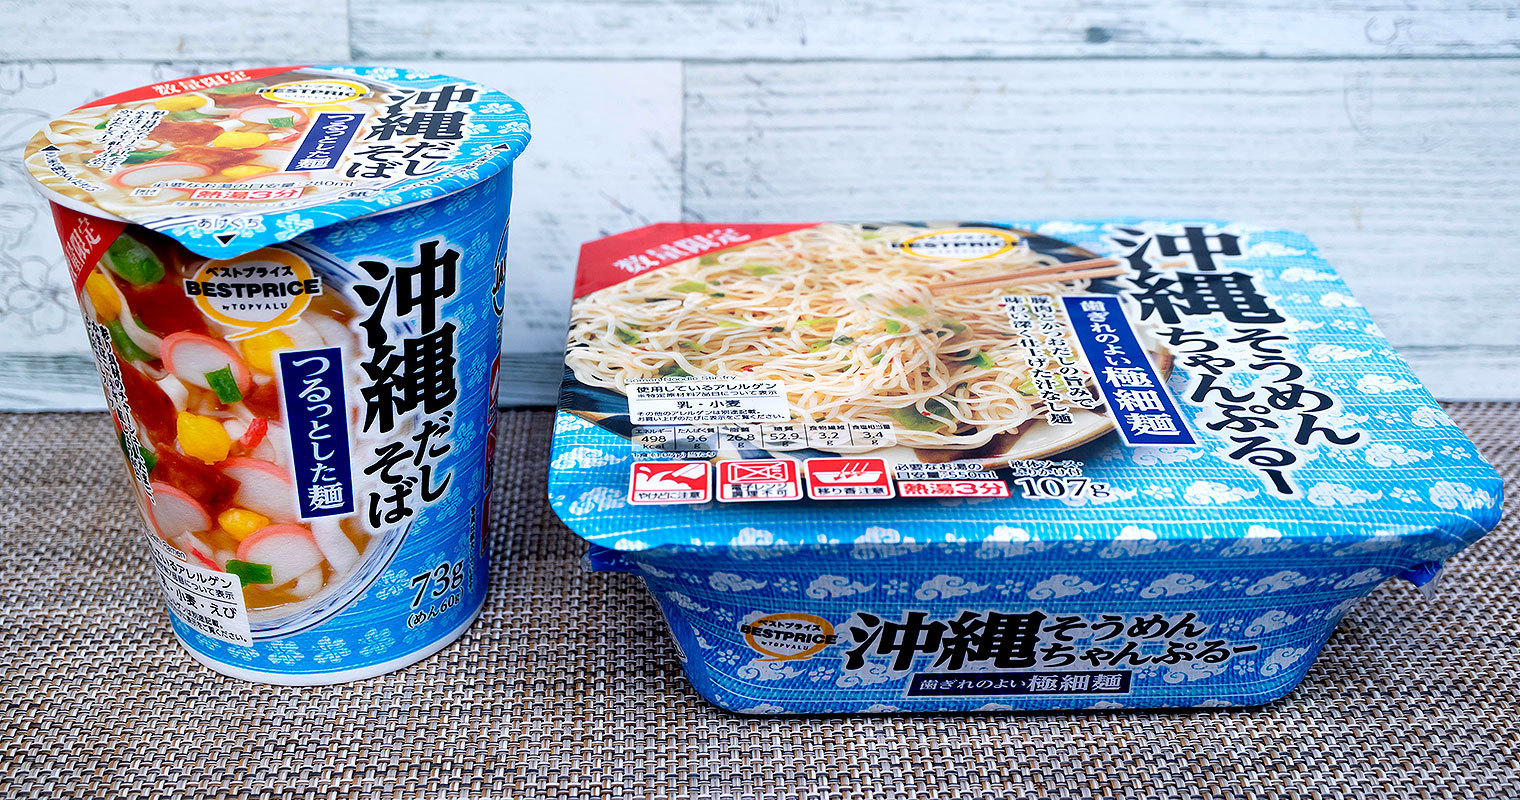 【イオンPB】トップバリュベストプライスのカップ麺「沖縄だしそば」と「沖縄そうめんちゃんぷるー」